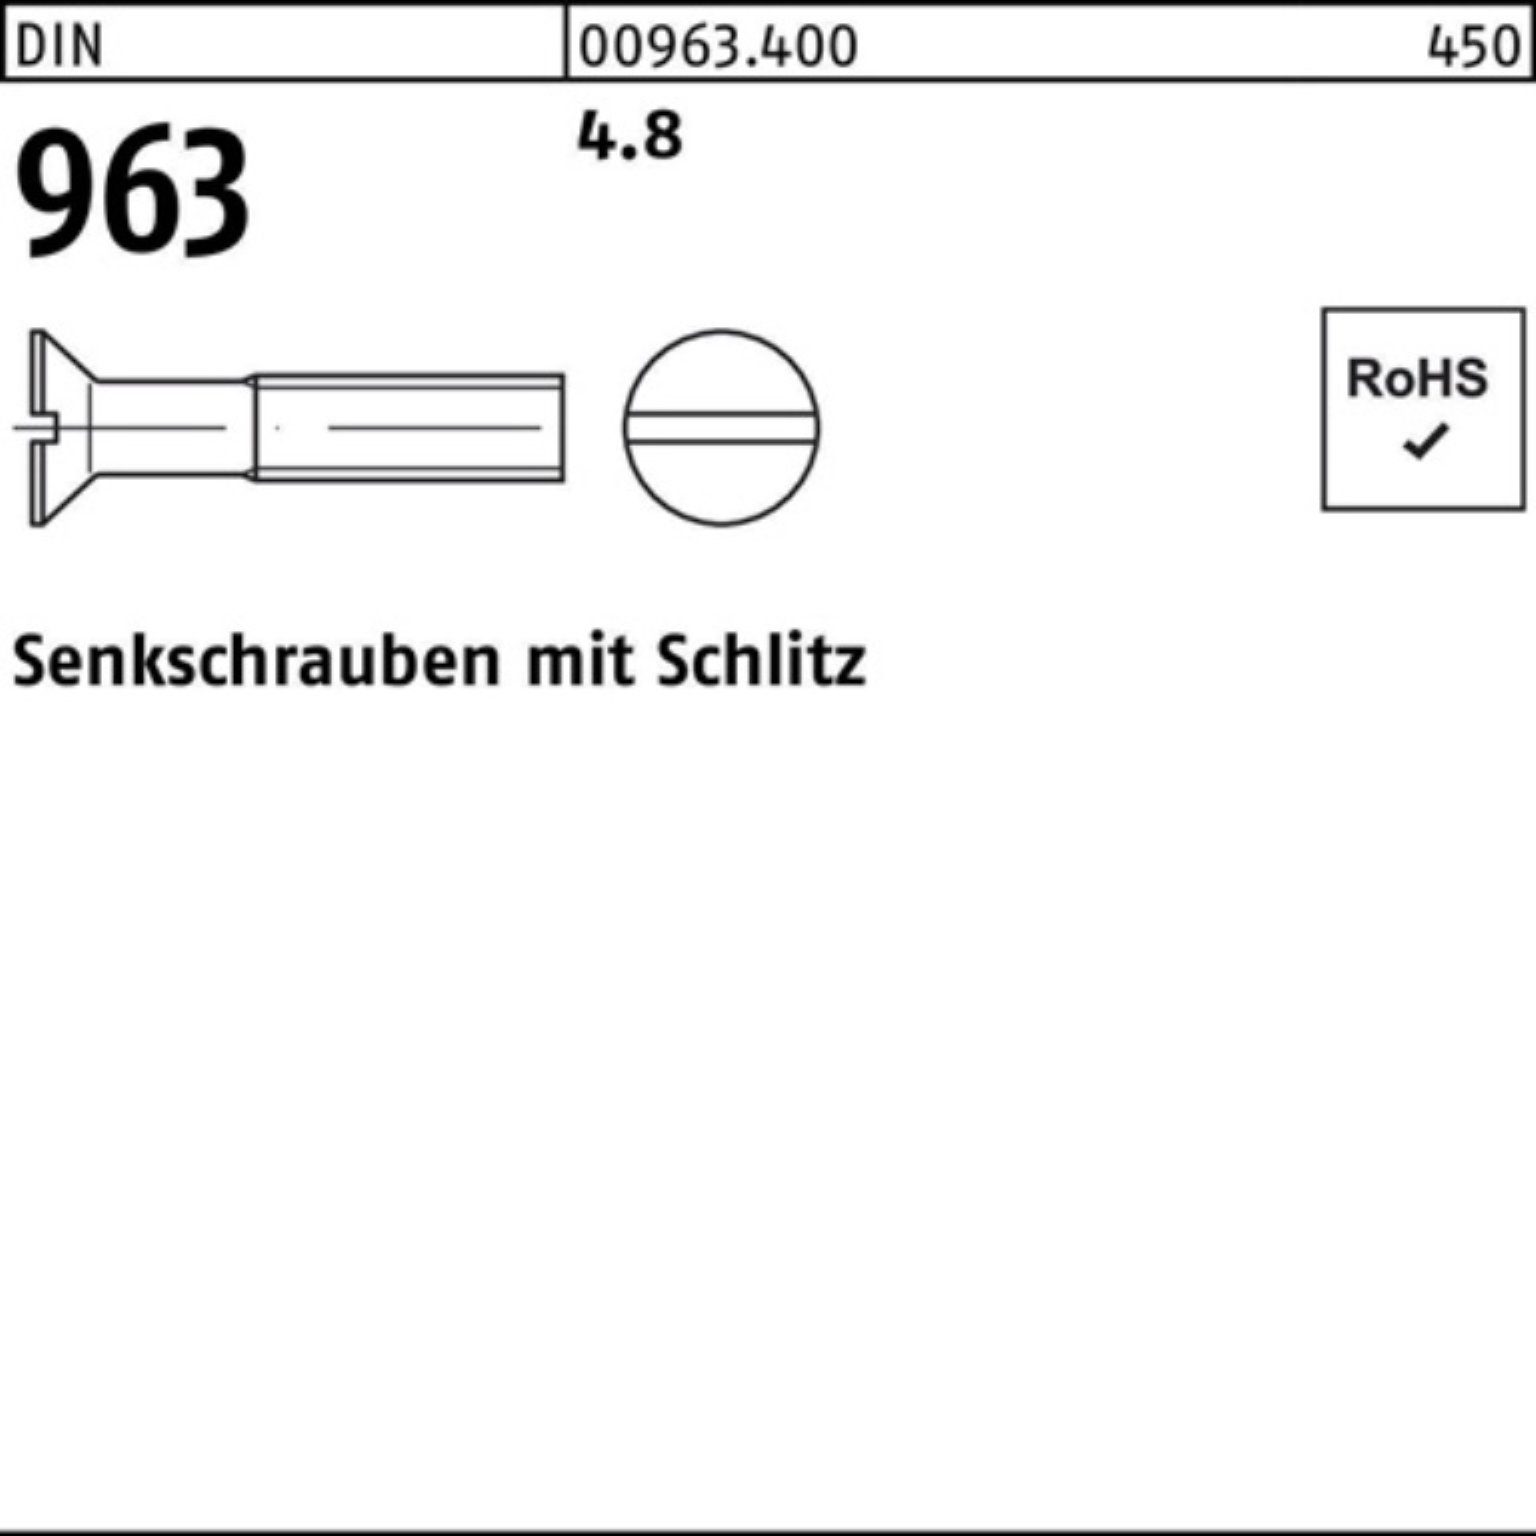 Schlitz Stück Reyher 4.8 96 Senkschraube 963 Pack Senkschraube 2000er 2000 DIN DIN 16 M4x